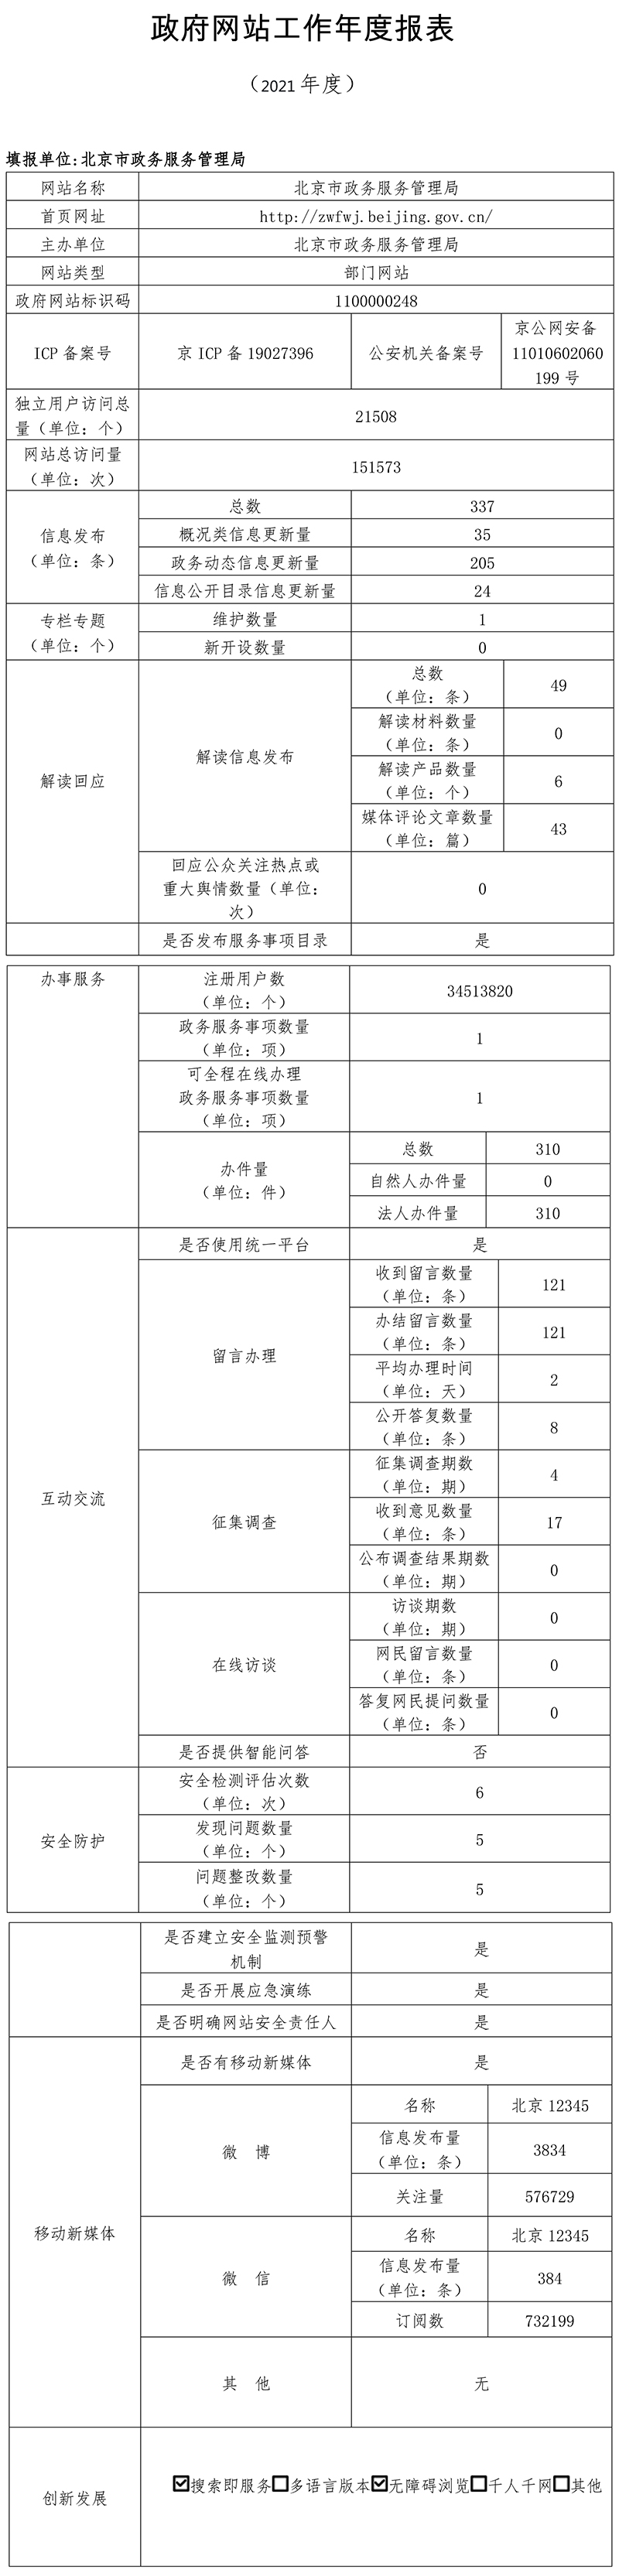 北京市政務服務管理局2021年政府網站年度工作報表